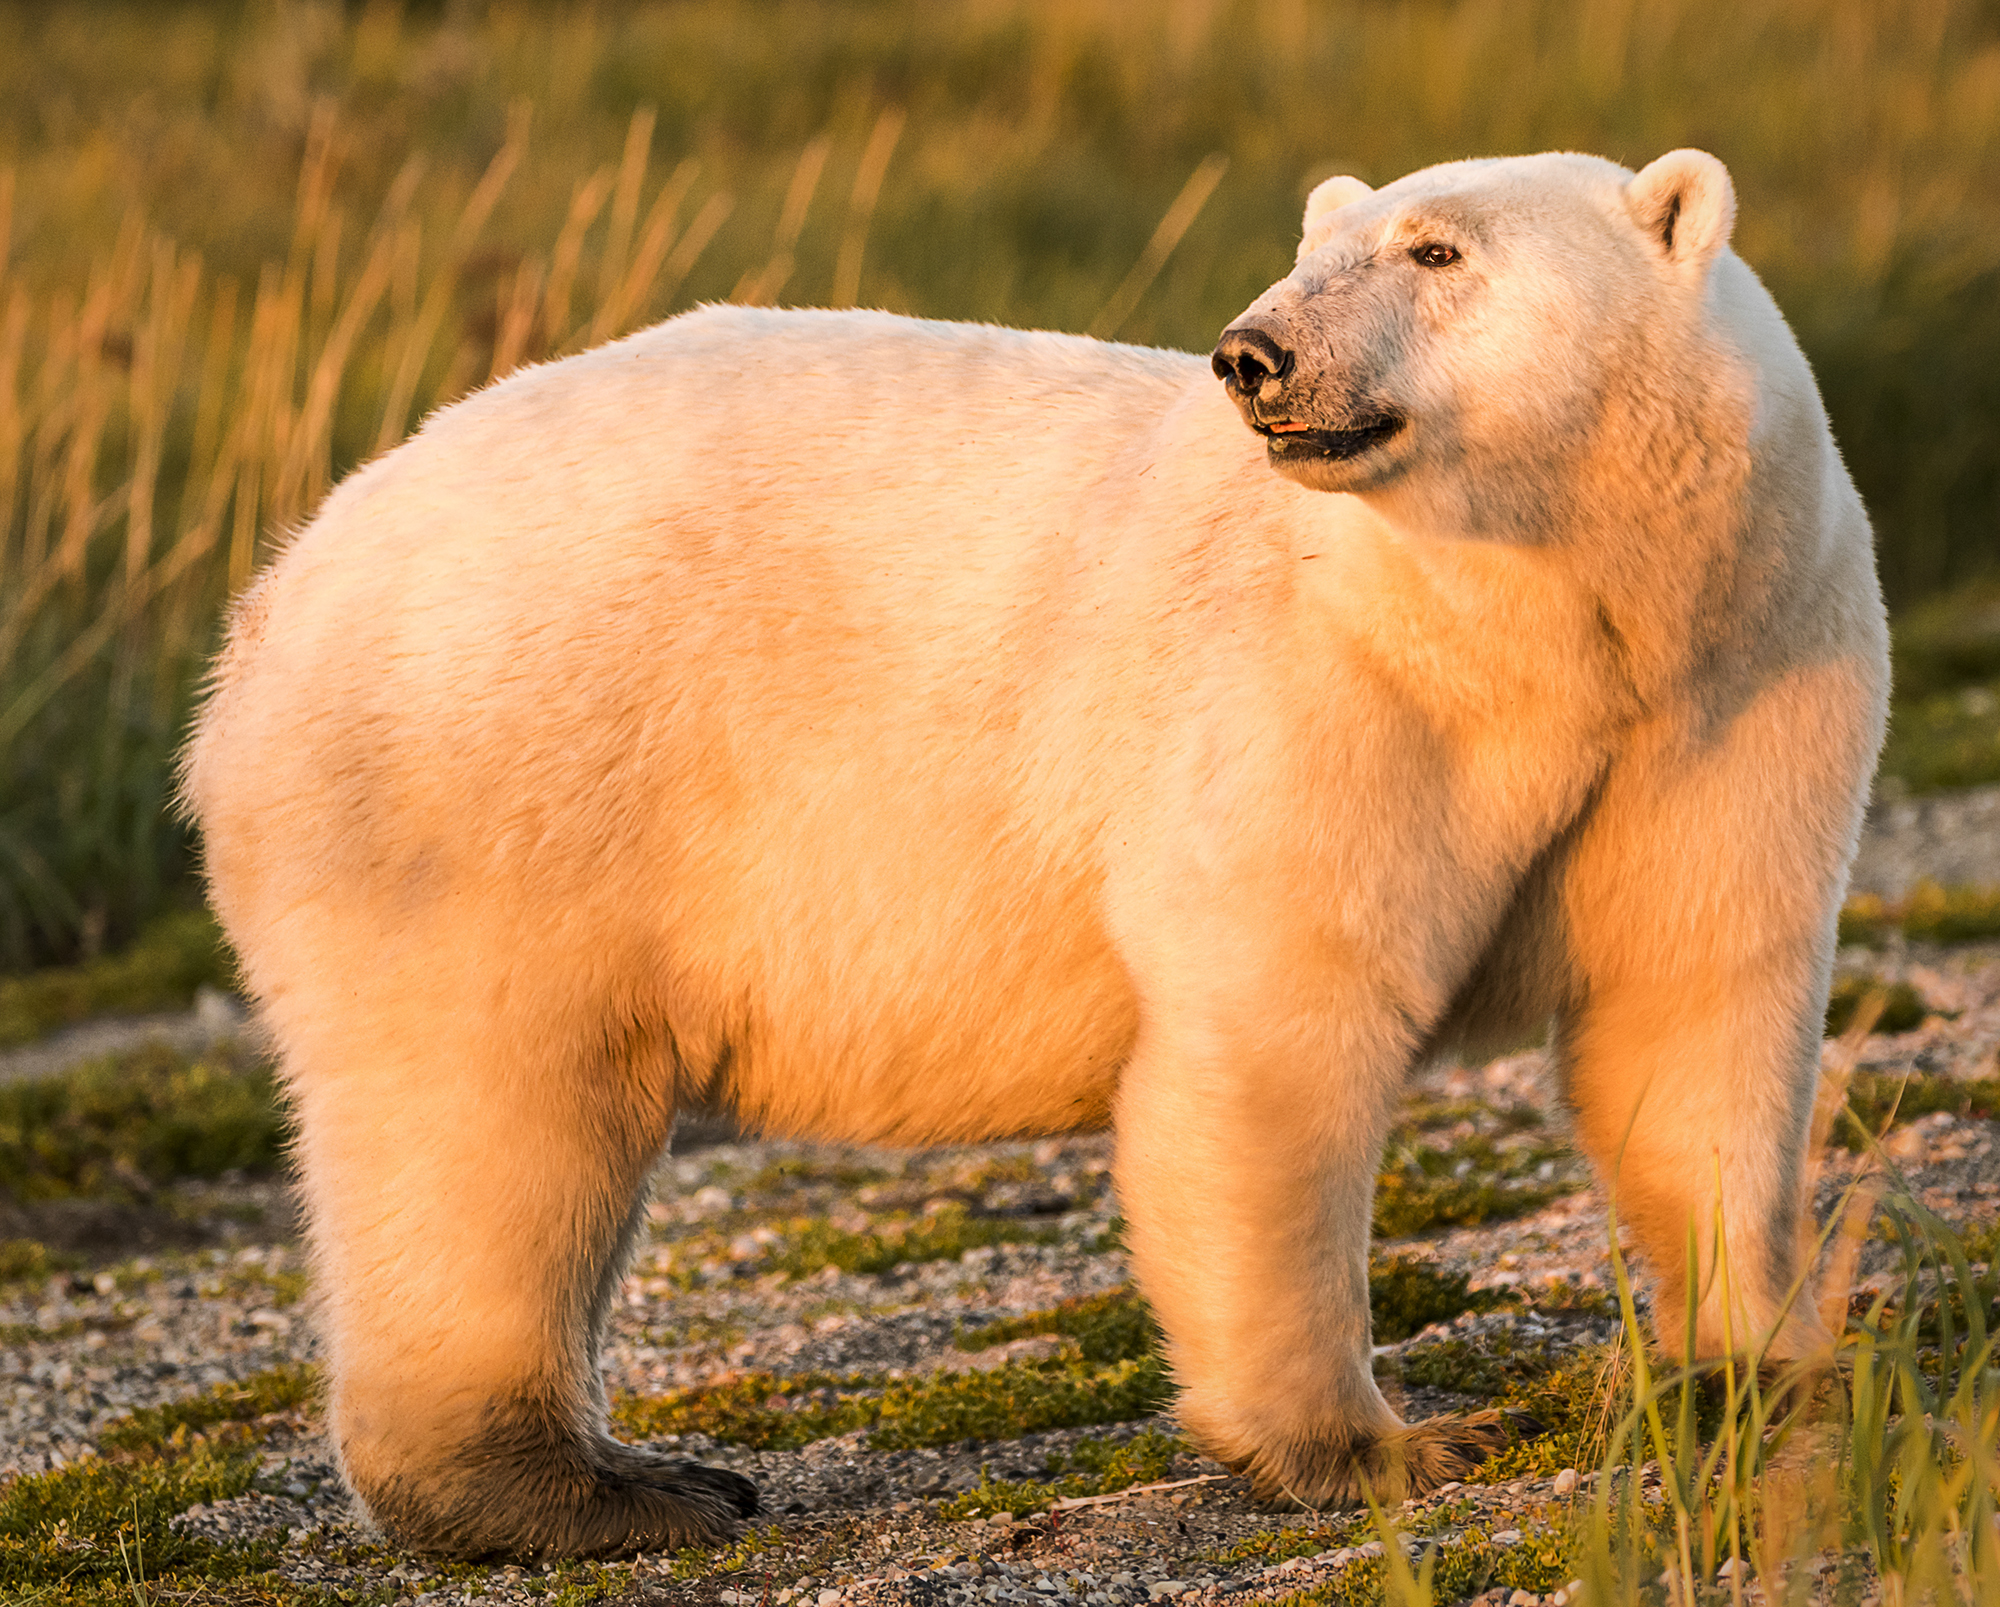 Polar bear in soft light. Ann Fulcher photo. Click image for more.